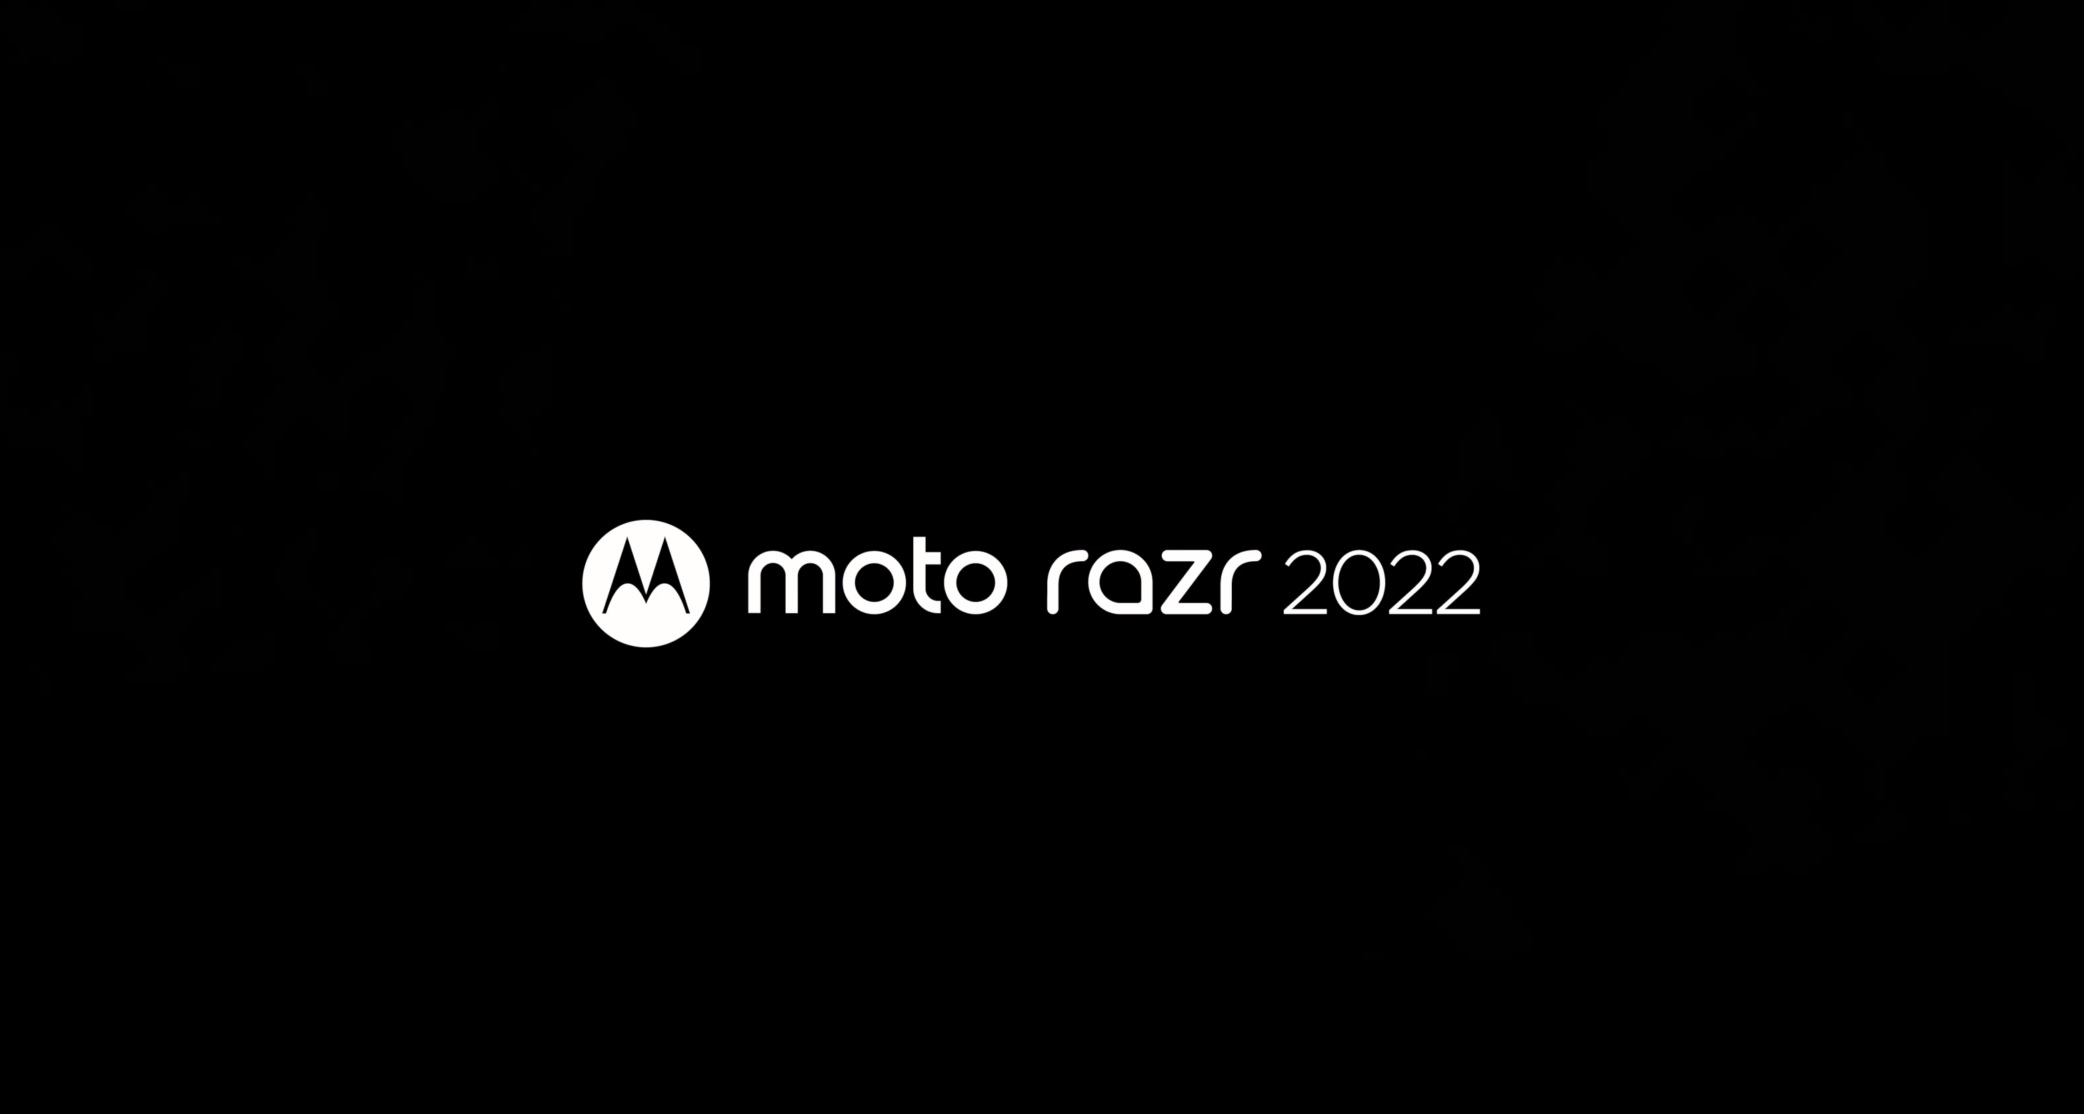 Motorola odwołała premierę Razr 2022 i X30 Pro. Polityka czy problemy techniczne?